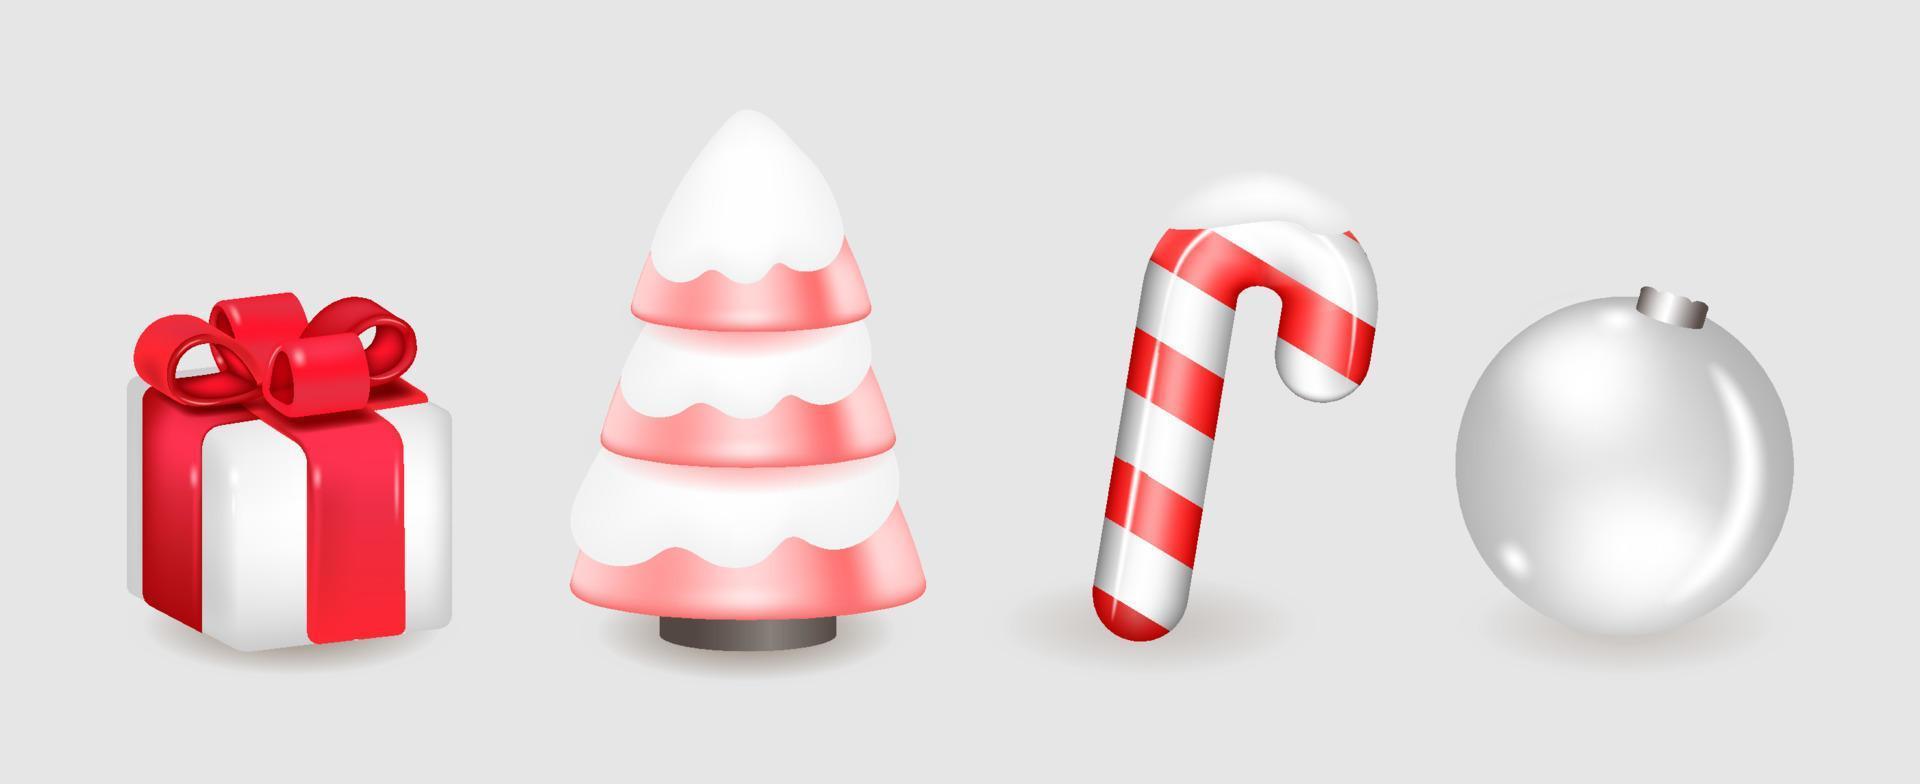 jul uppsättning 3d jul träd gåva godis och ballong vektor illustration